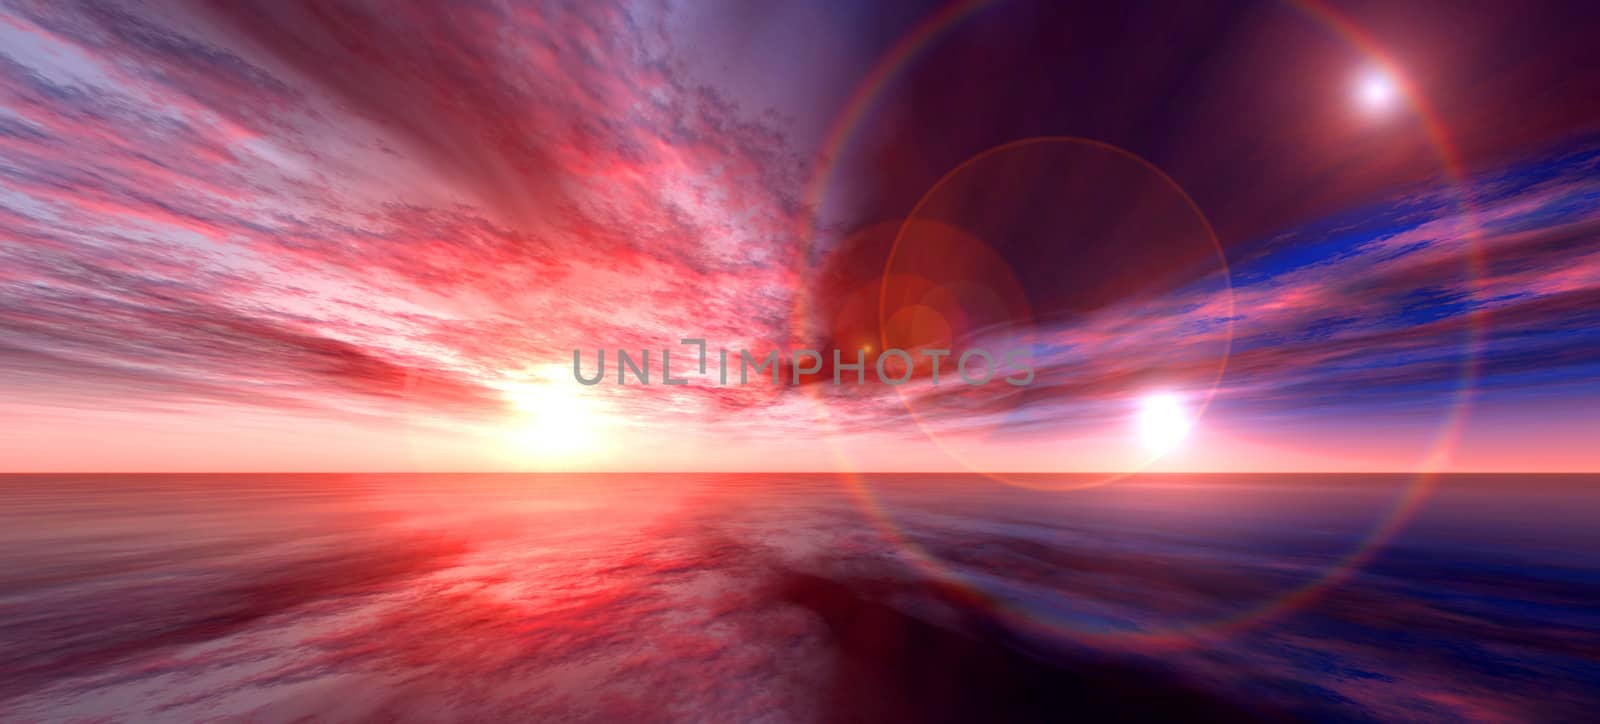 Fantastic 3D sunset render.
